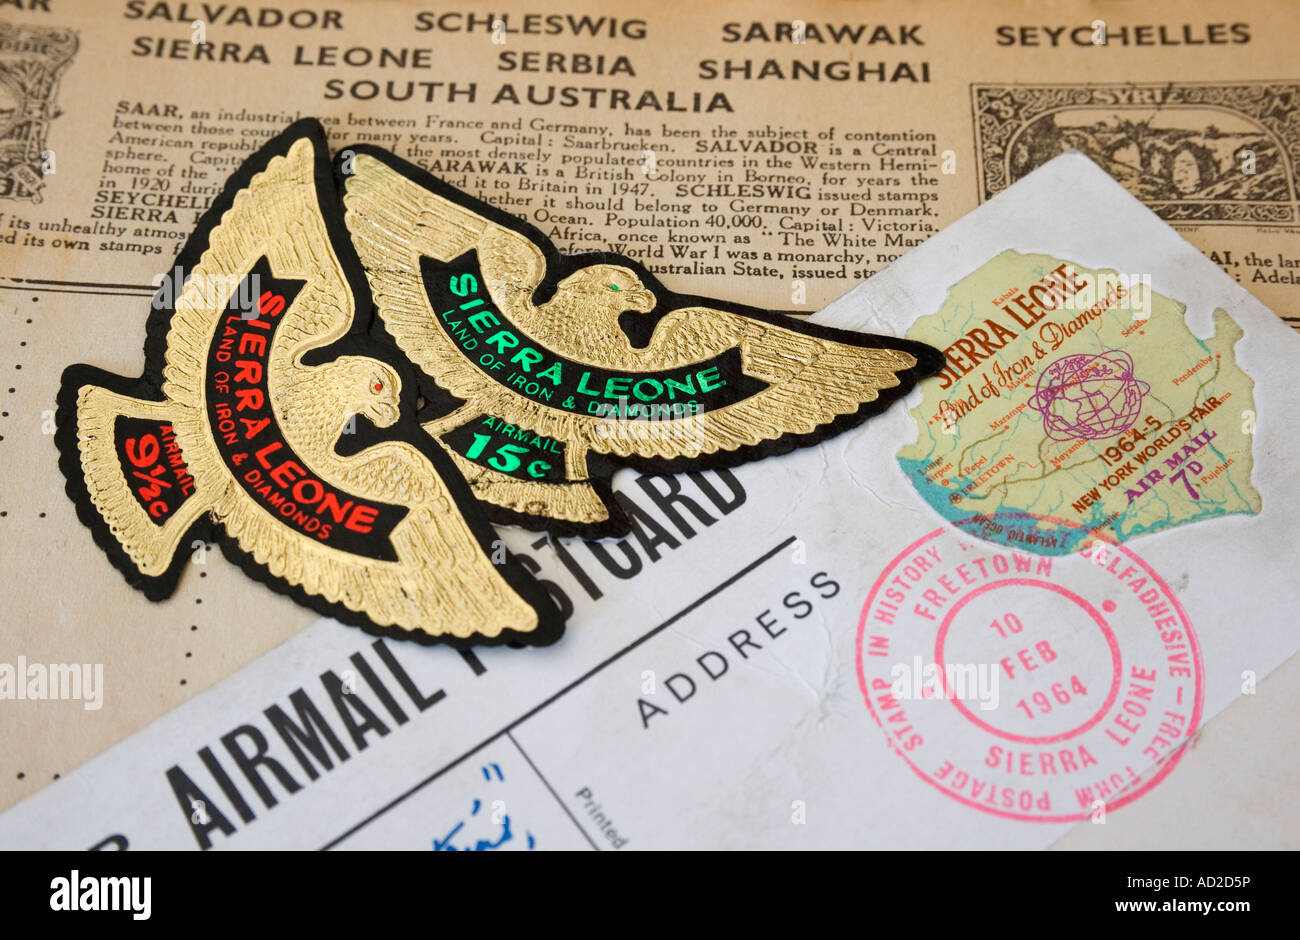 Forme libre premier timbre auto-adhésif à partir de la Sierra Leone avec deux timbres de la Sierra Leone en forme d'aigle Banque D'Images